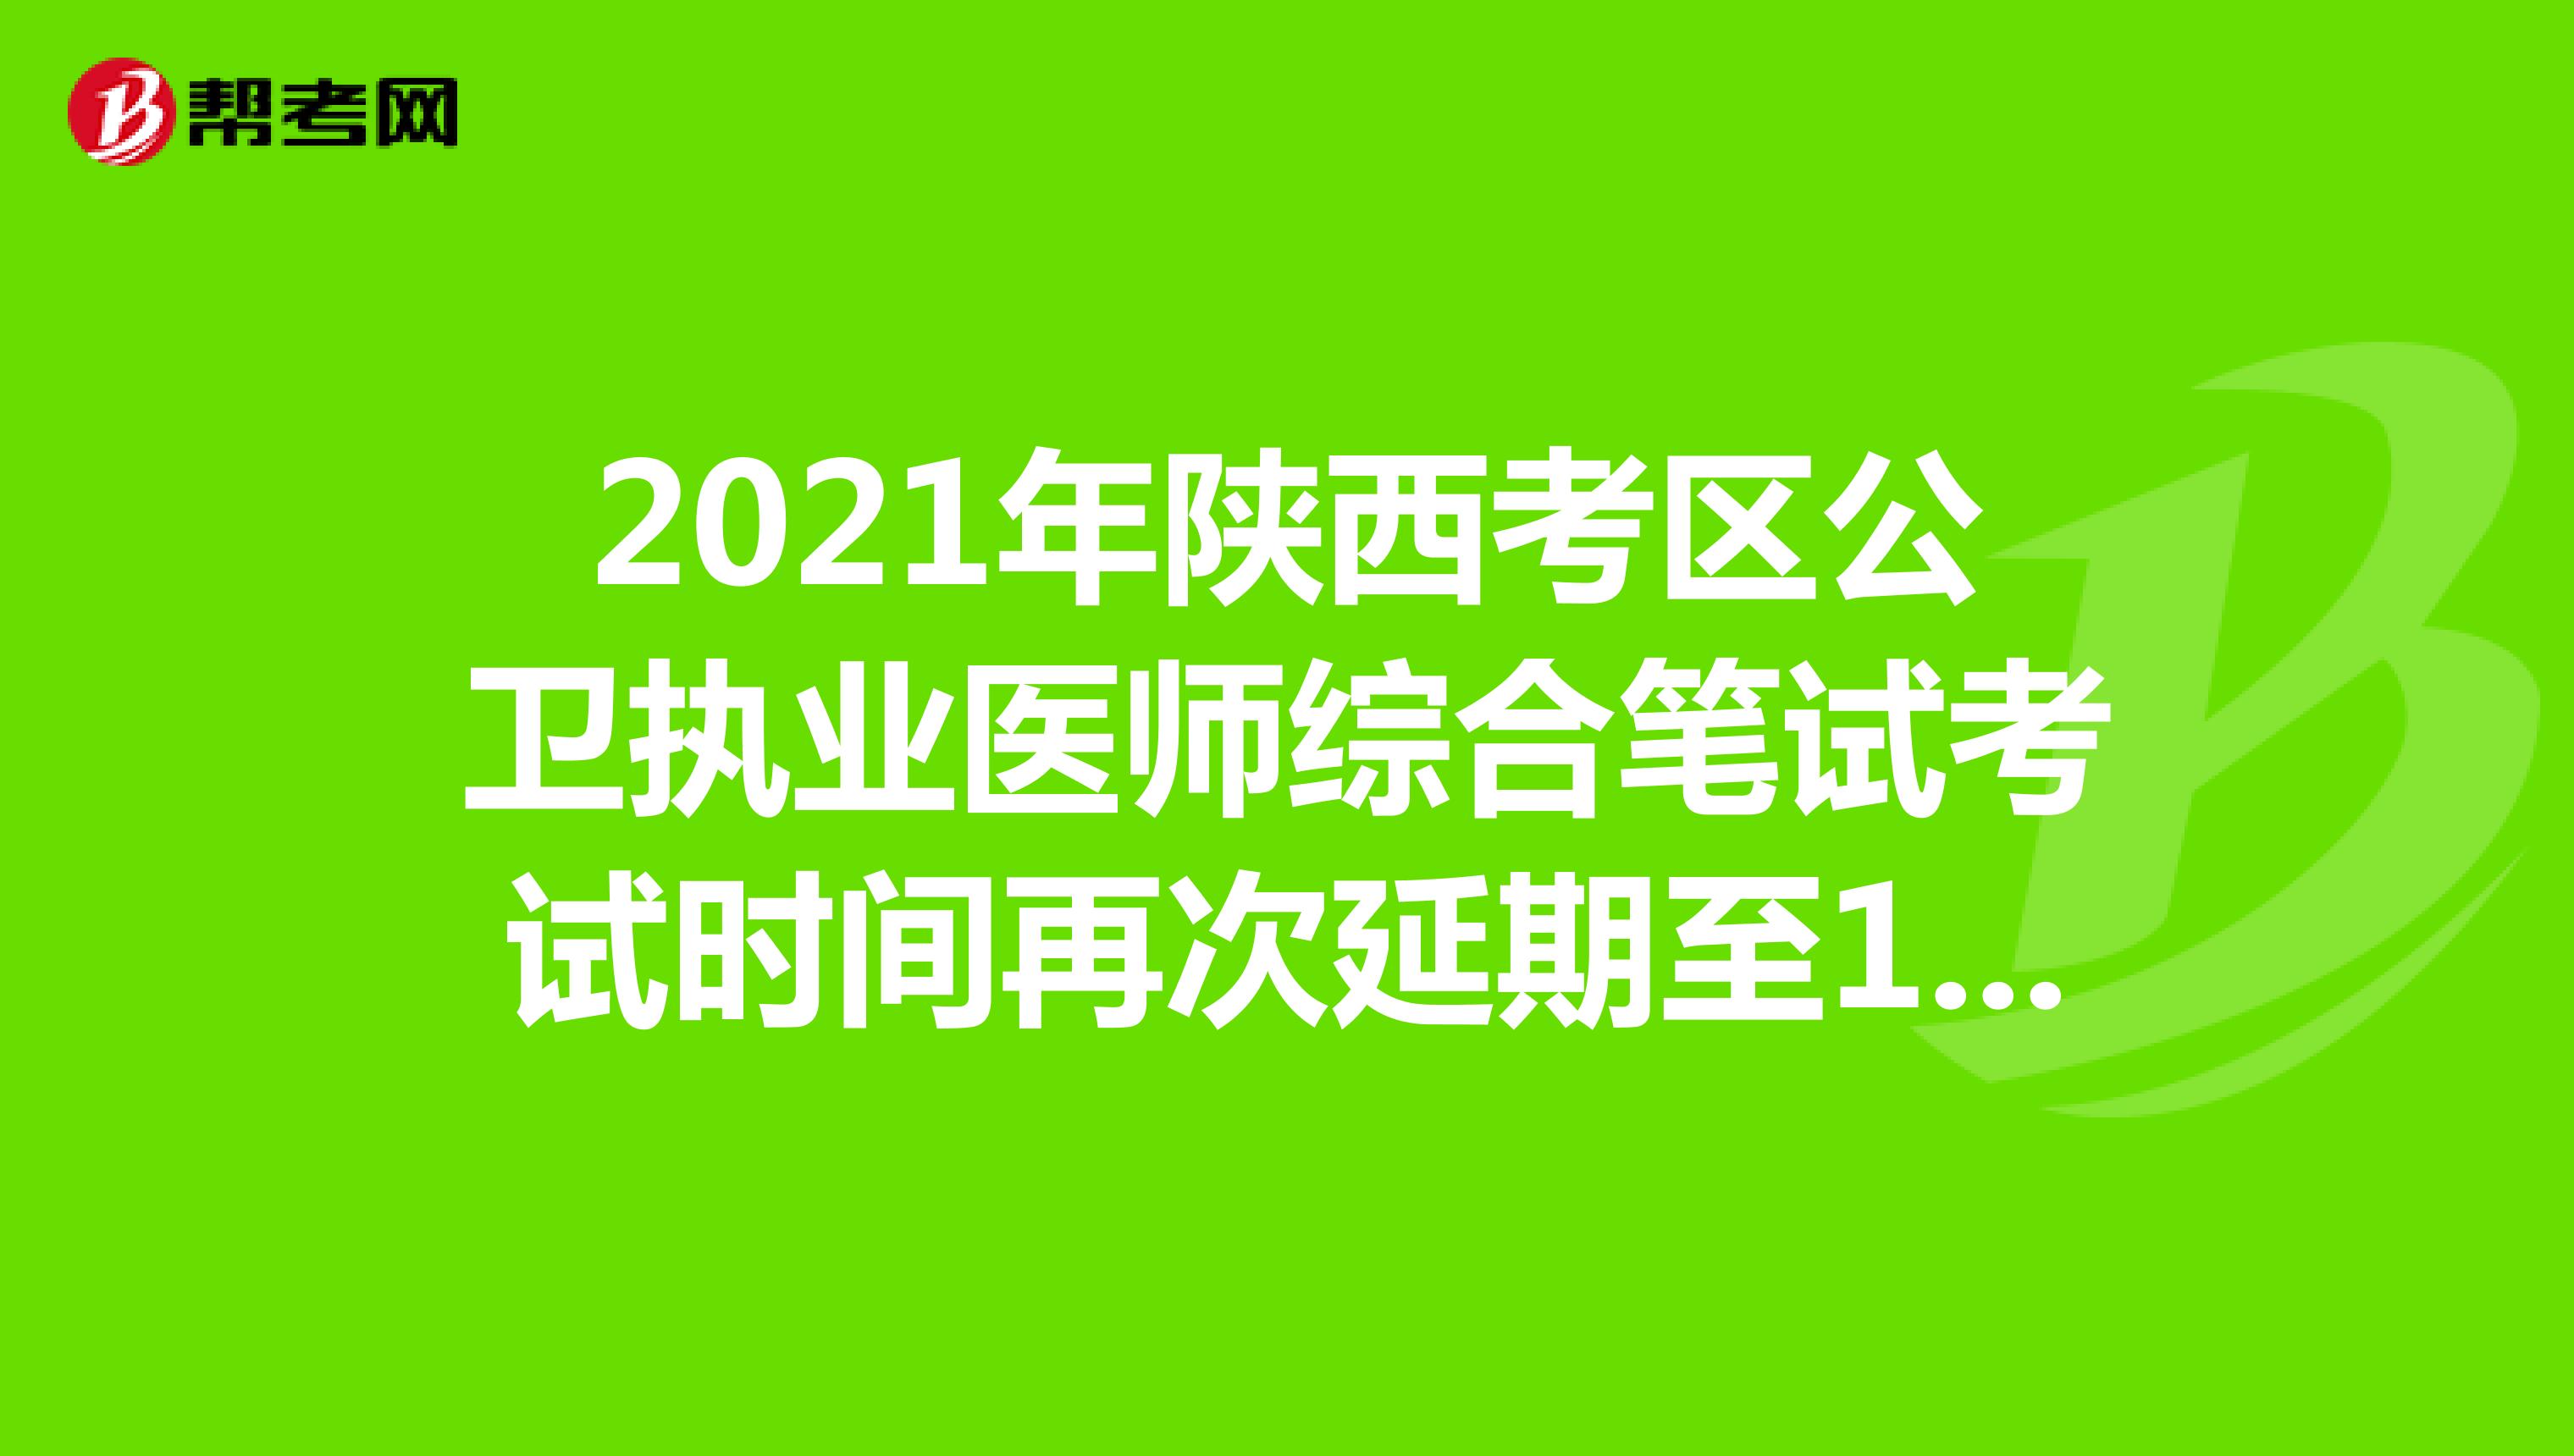 2021年陕西考区公卫执业医师综合笔试考试时间再次延期至11月